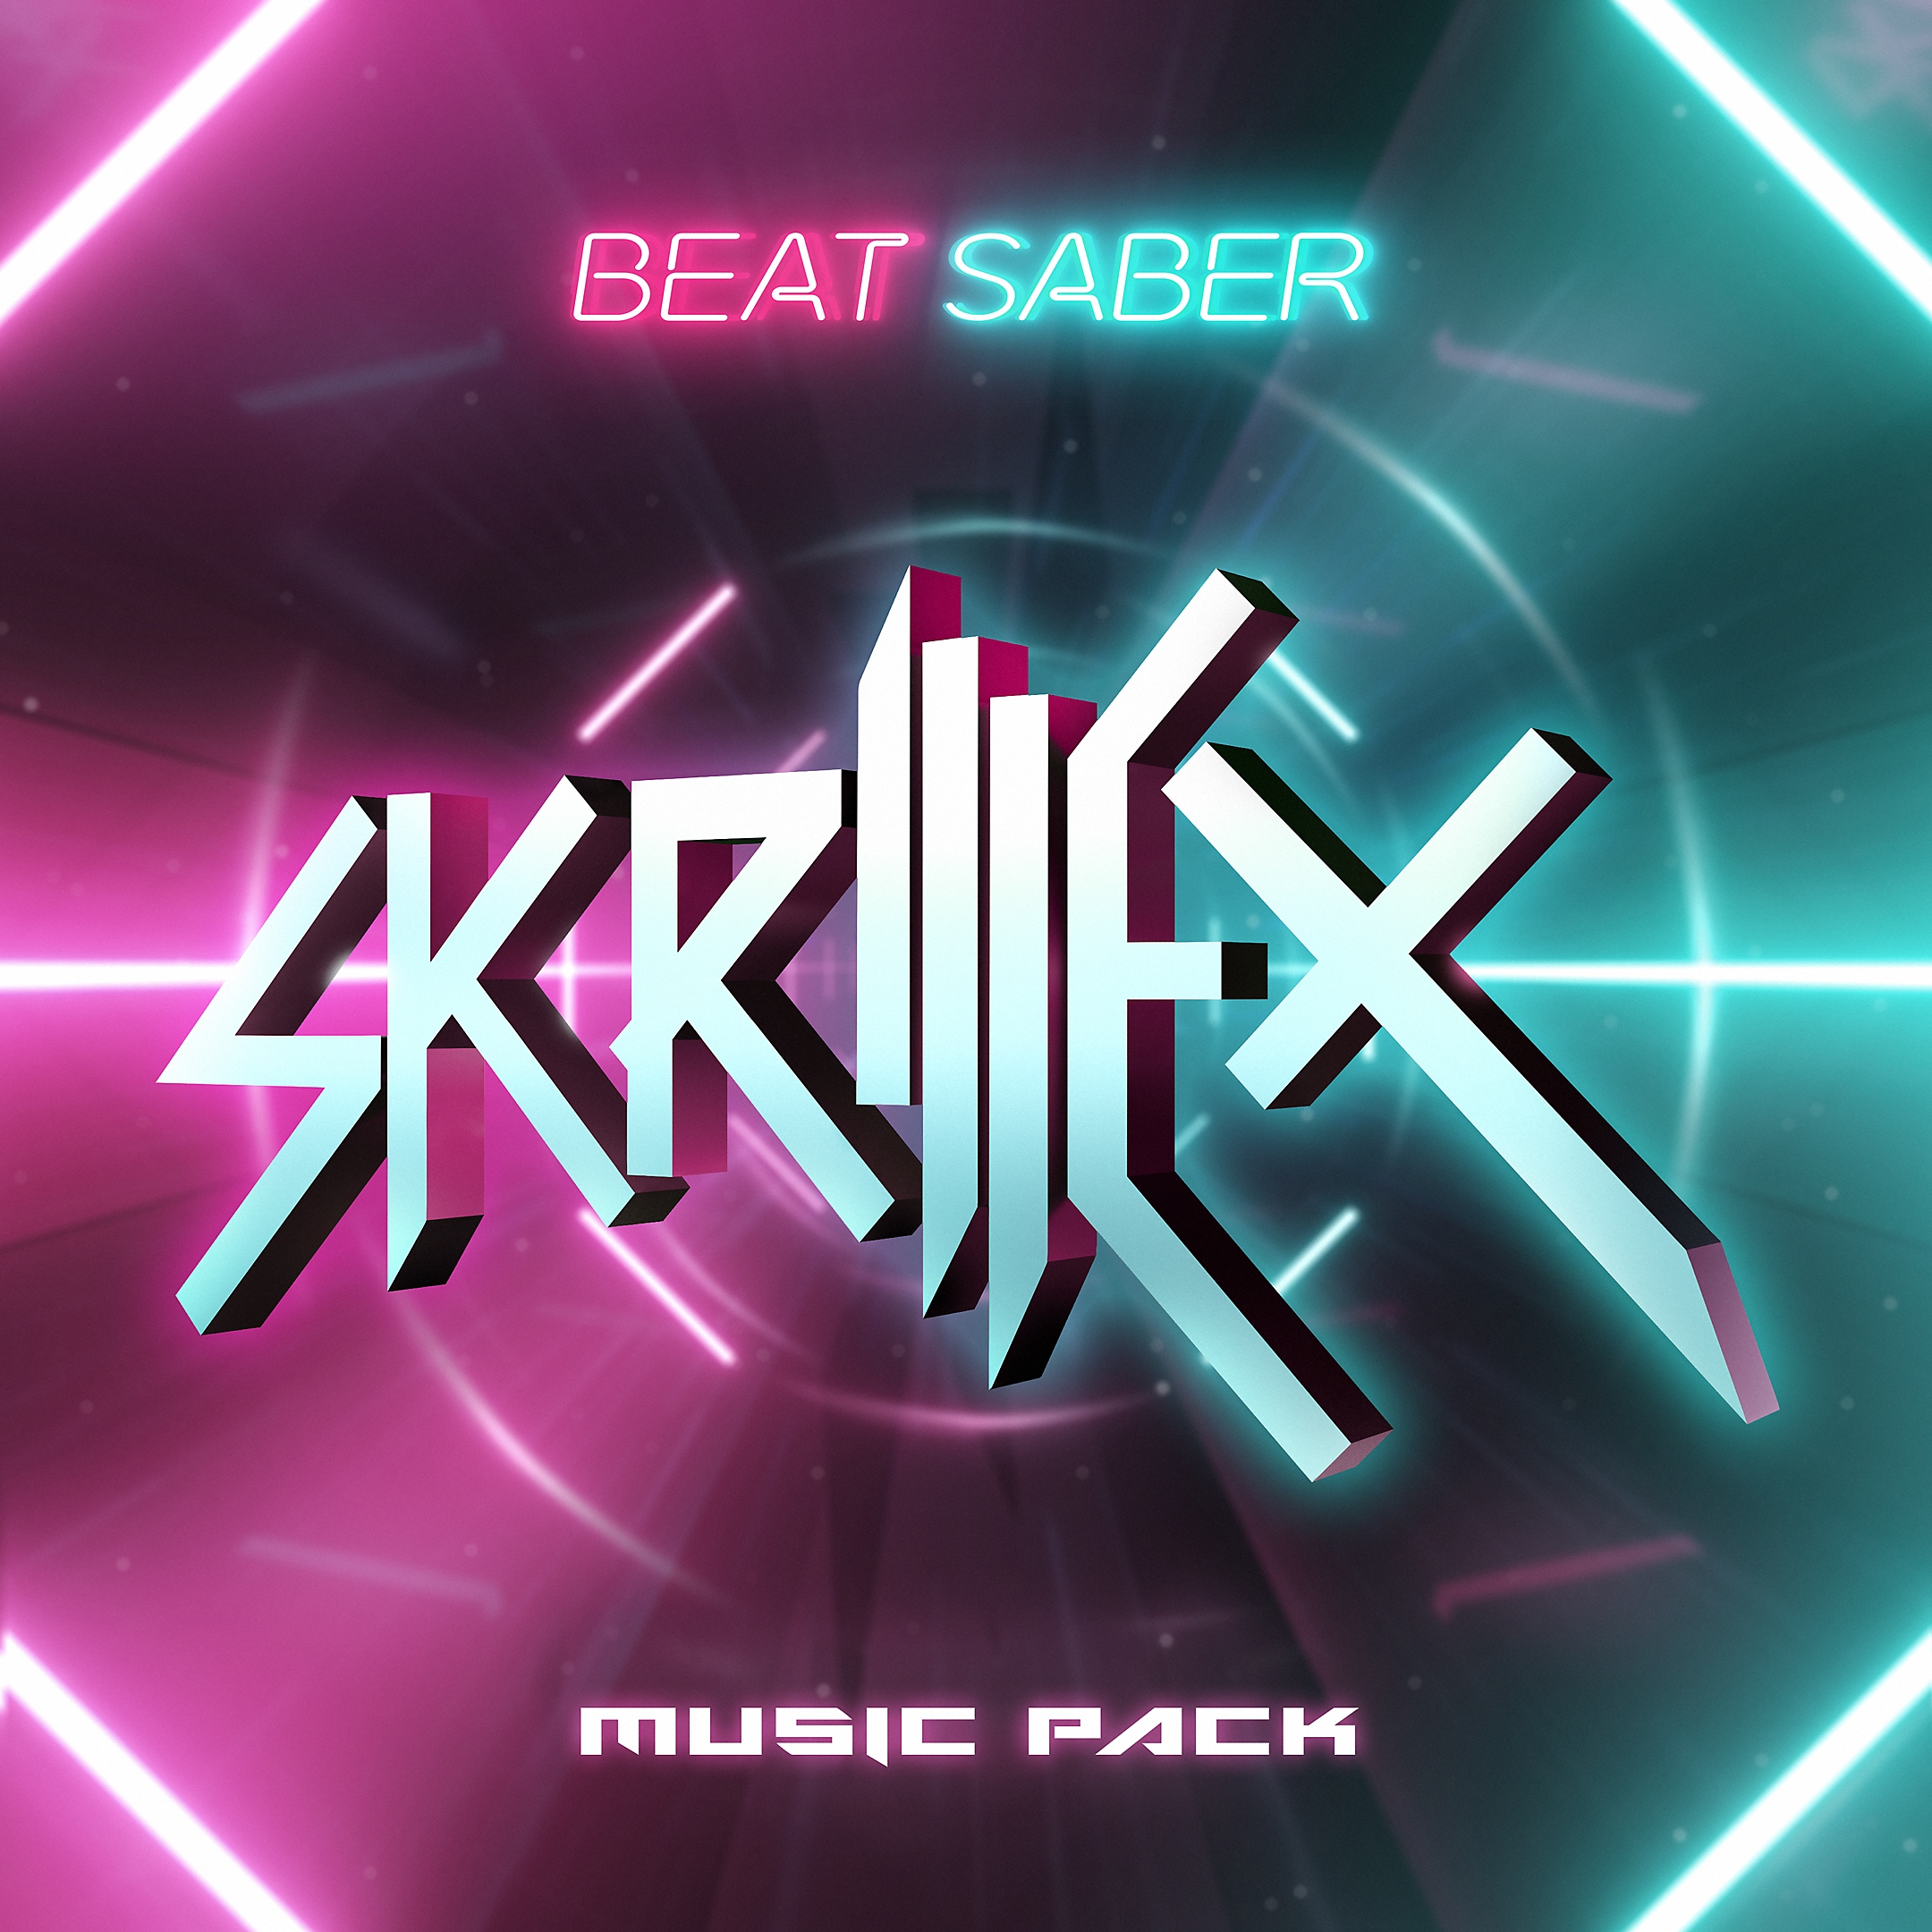 Pack de música para Beat Saber de Skrillez